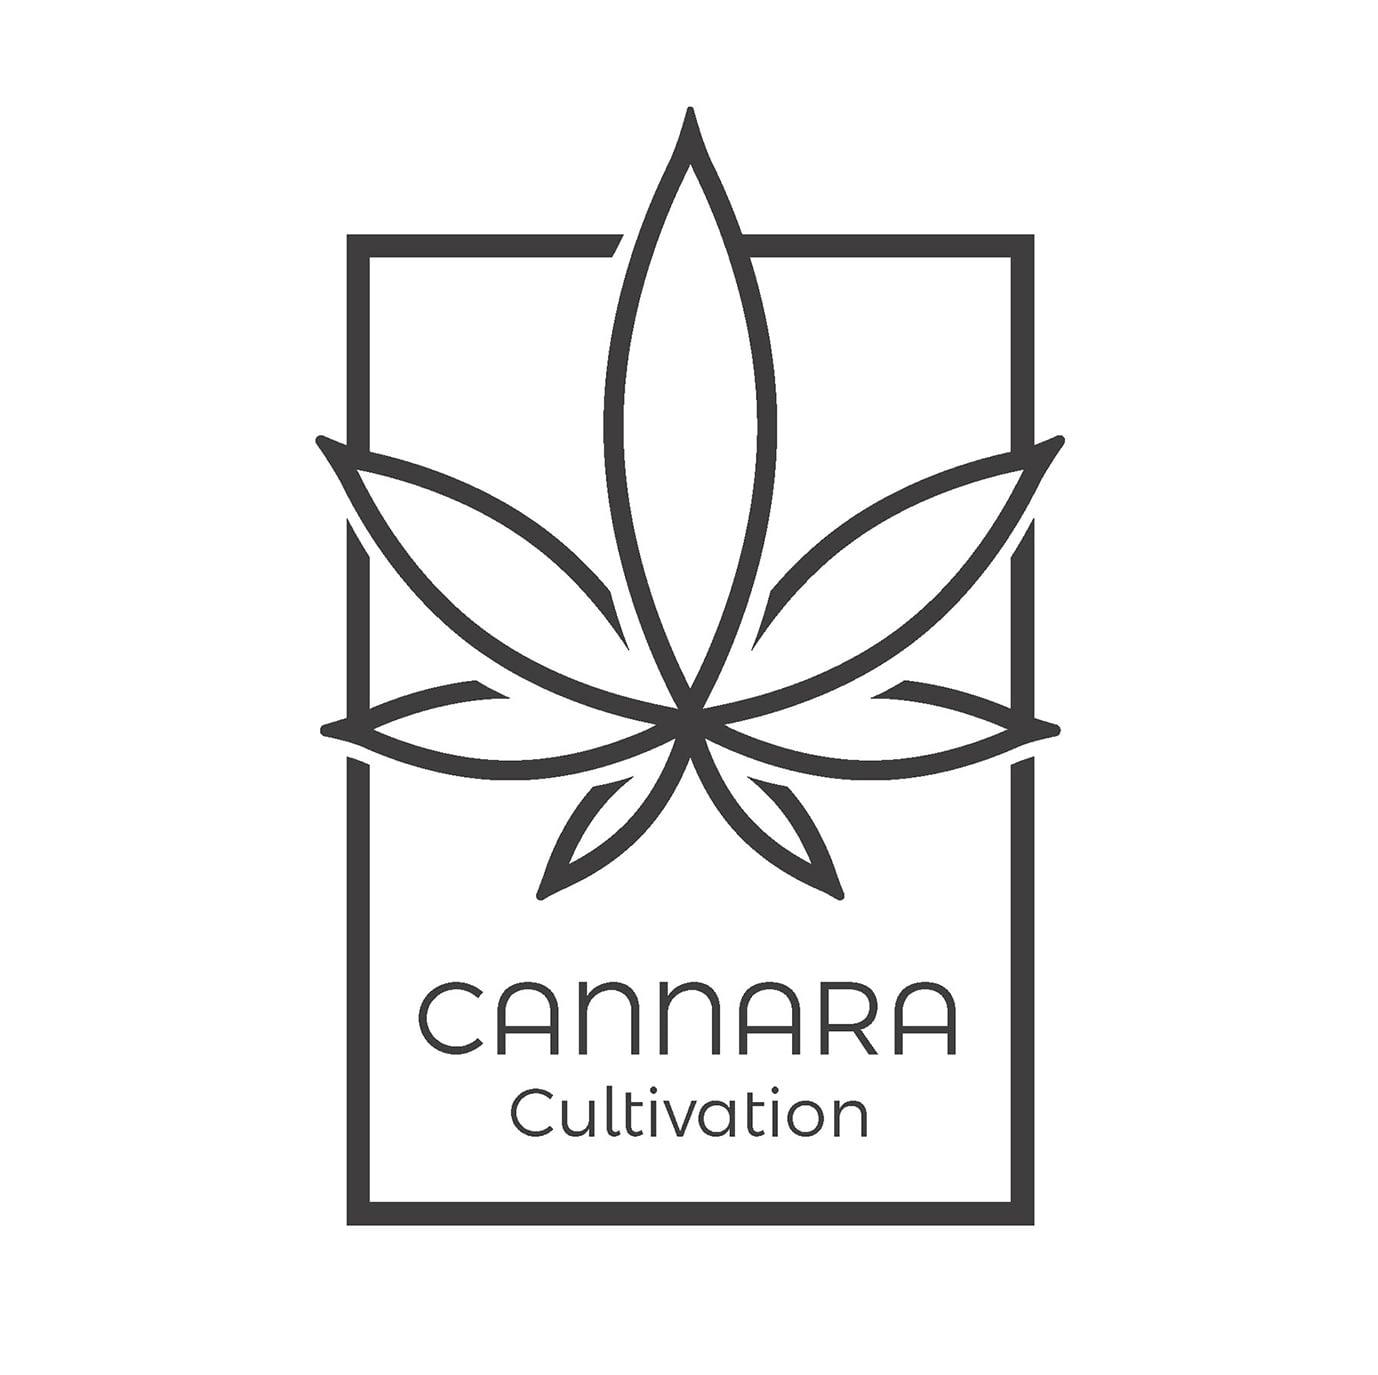 Nueva marca Cannara